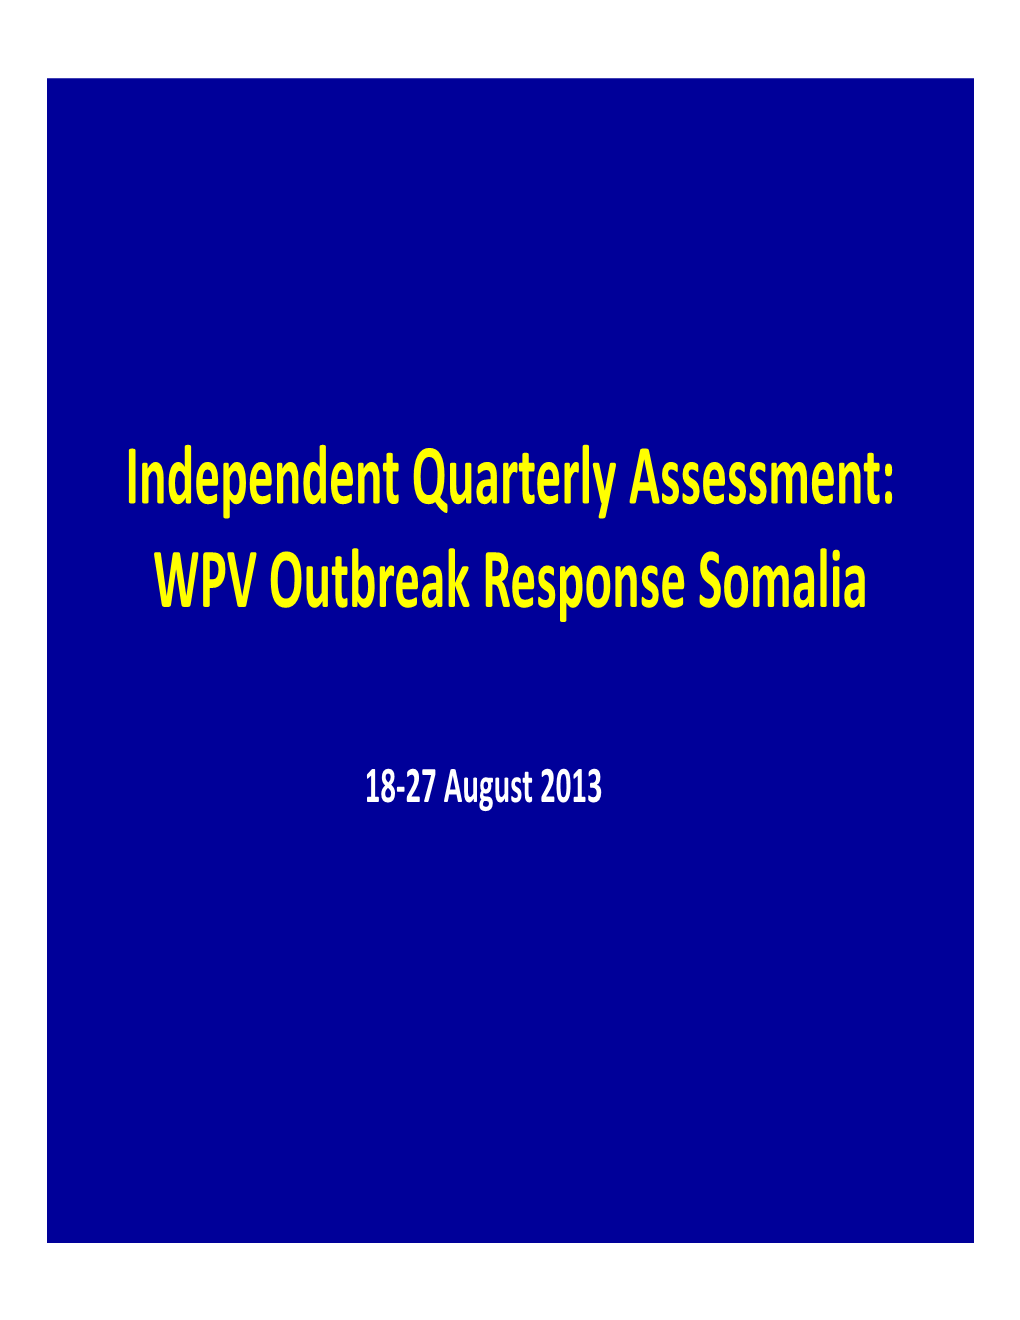 WPV Outbreak Response Somalia